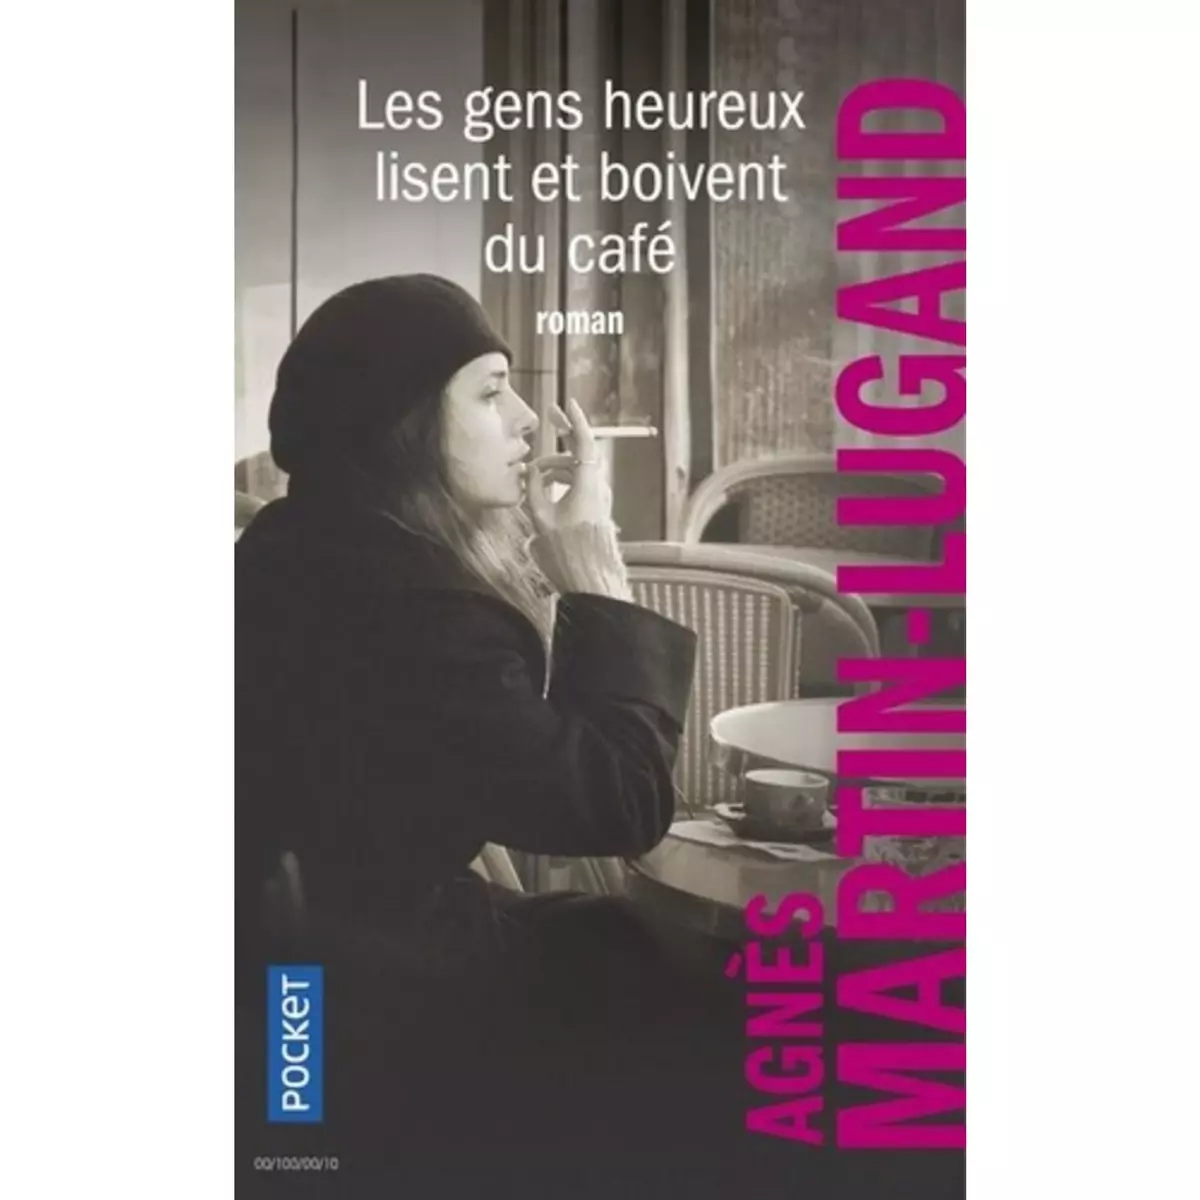  LES GENS HEUREUX LISENT ET BOIVENT DU CAFE, Martin-Lugand Agnès